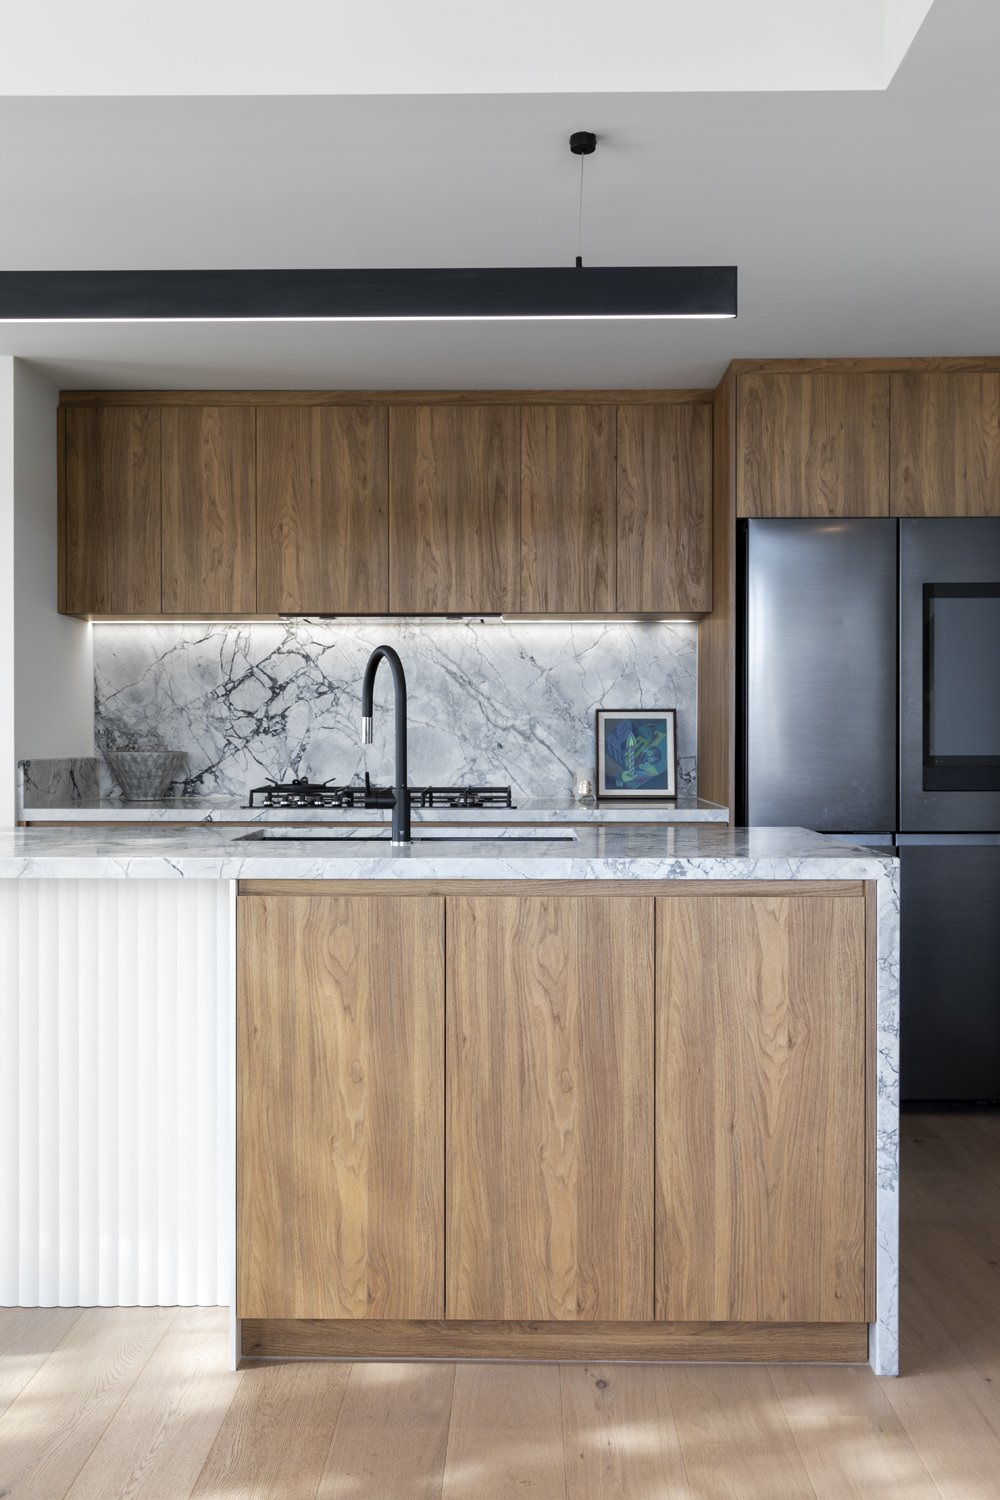 Kitchen renovation designed by Melbourne residential interior designer Meredith Lee